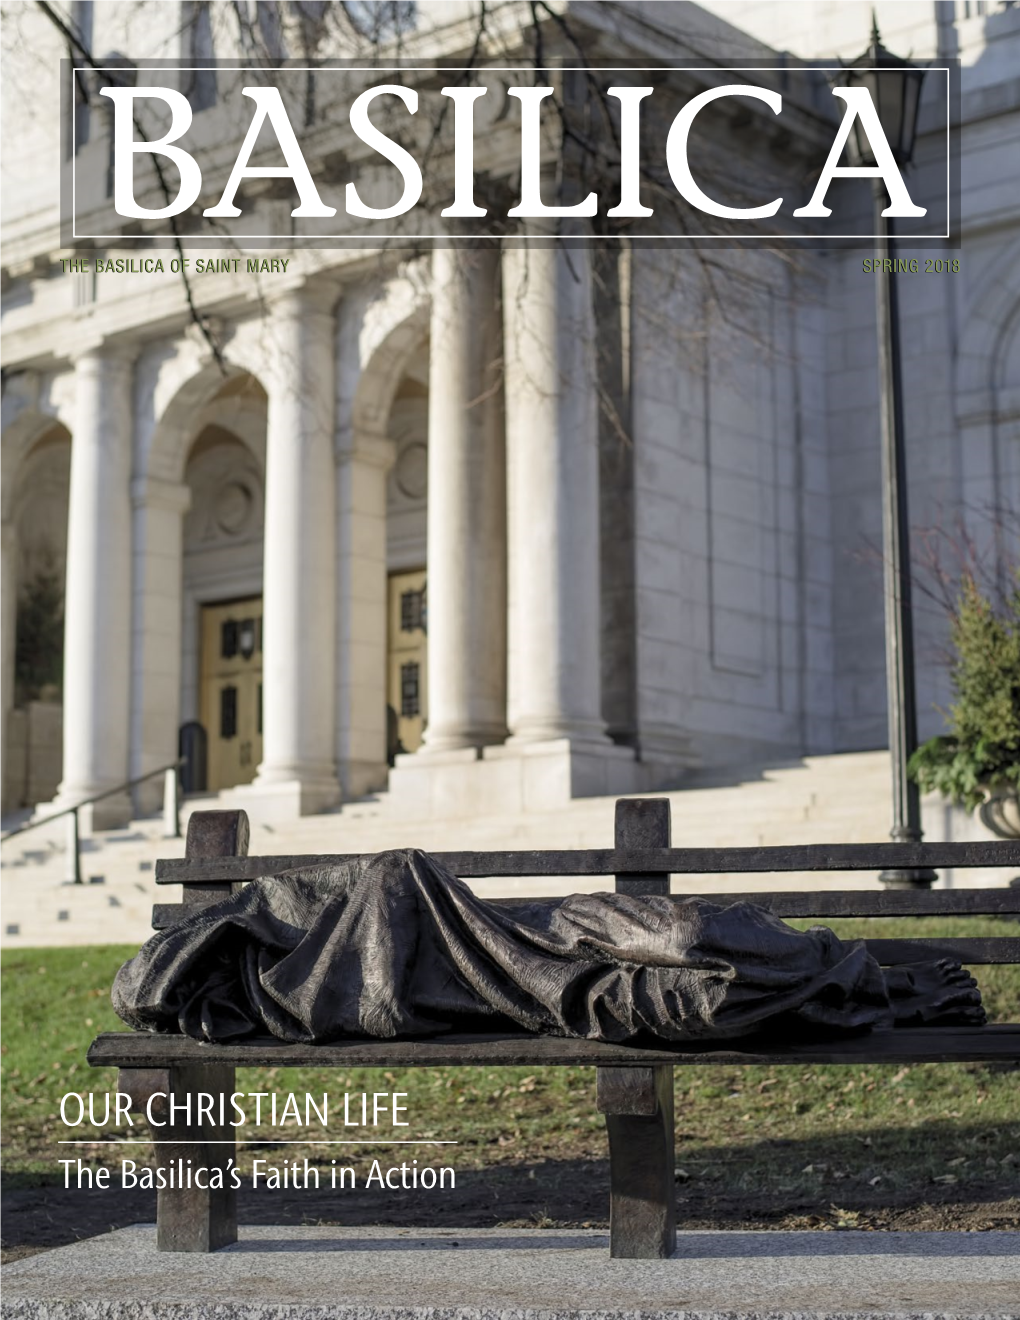 Basilica Magazine Spring 2018